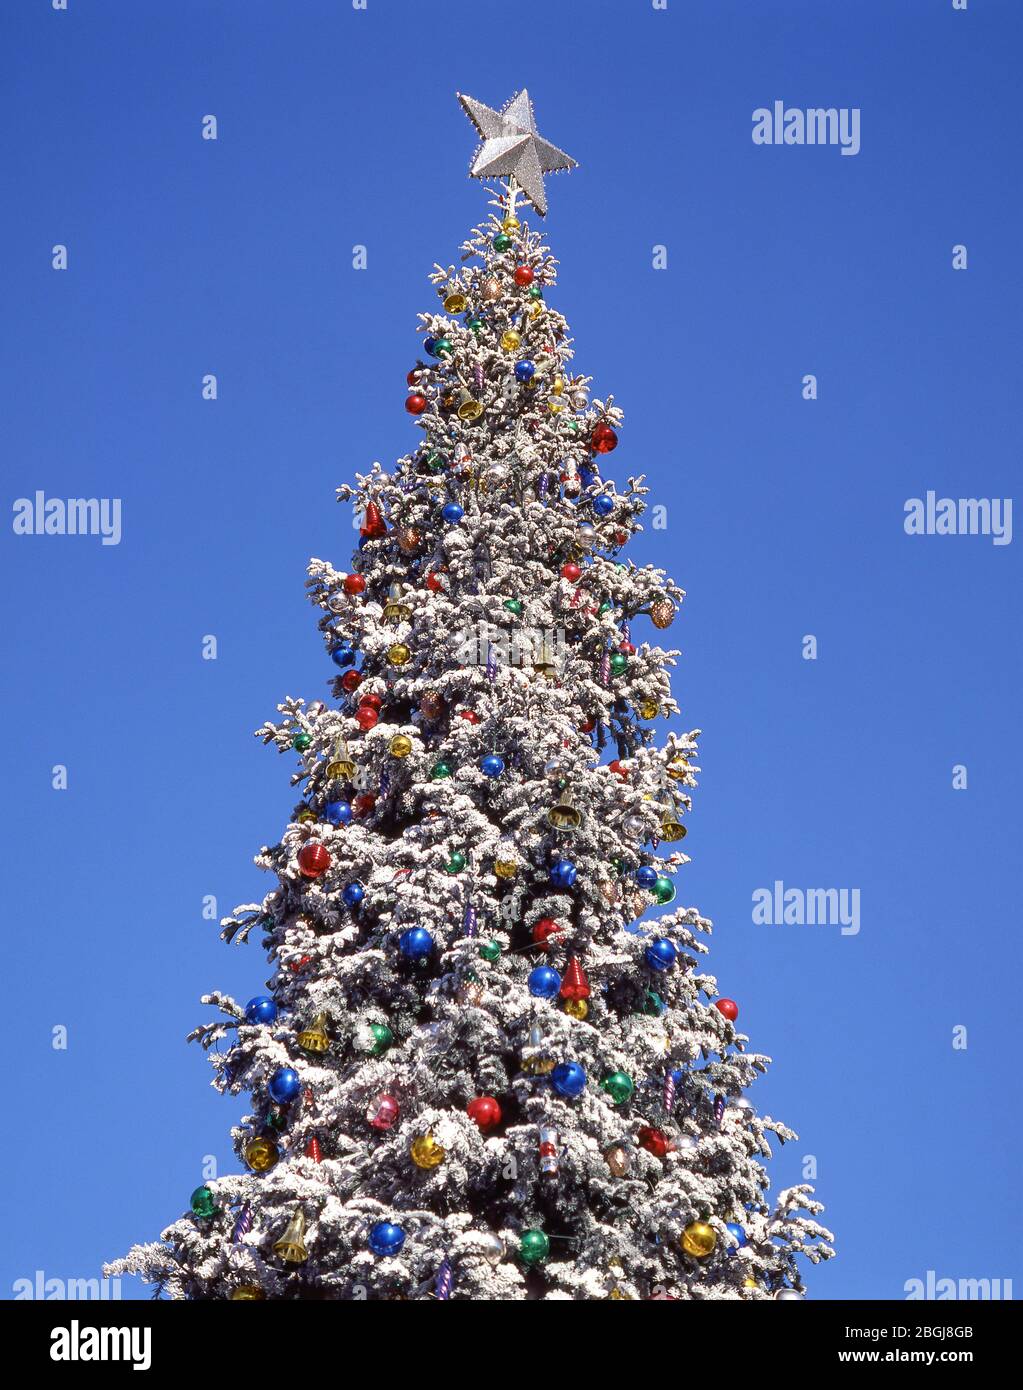 Dekorierter Weihnachtsbaum im Freien, Los Angeles, Kalifornien, Vereinigte Staaten von Amerika Stockfoto